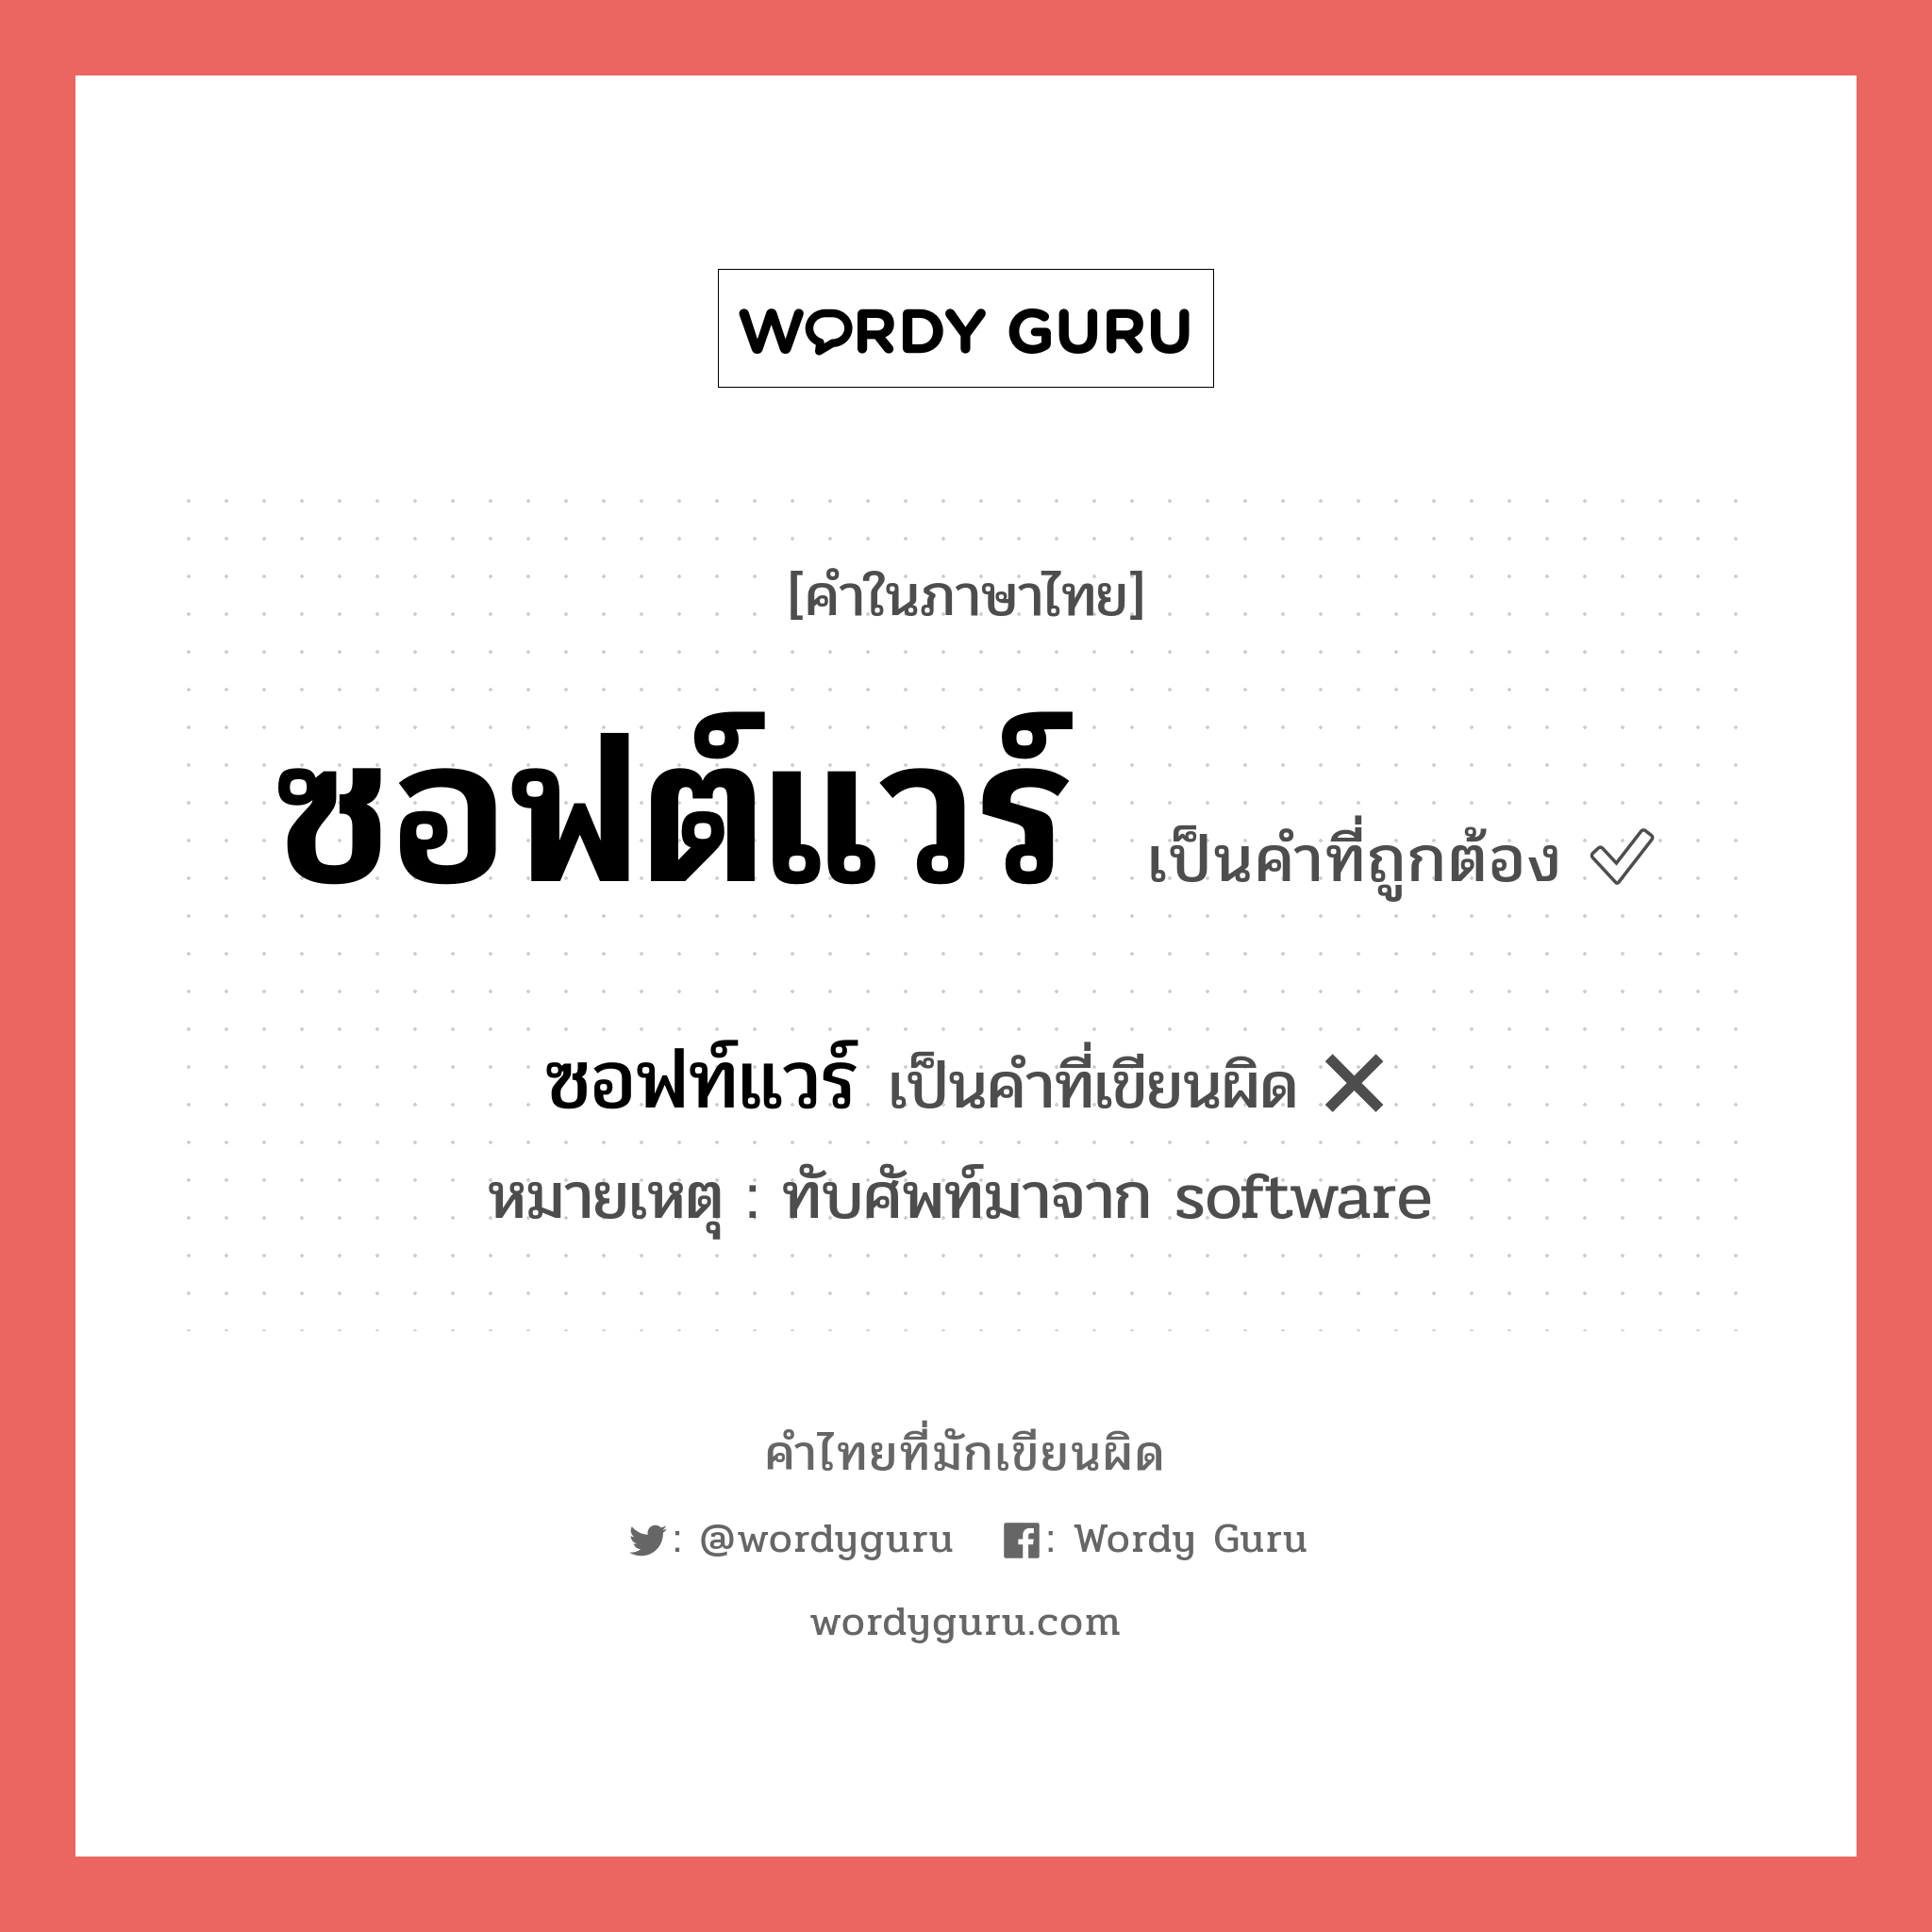 ซอฟต์แวร์ หรือ ซอฟท์แวร์ เขียนยังไง? คำไหนเขียนถูก?, คำในภาษาไทยที่มักเขียนผิด ซอฟต์แวร์ คำที่ผิด ❌ ซอฟท์แวร์ หมายเหตุ ทับศัพท์มาจาก software